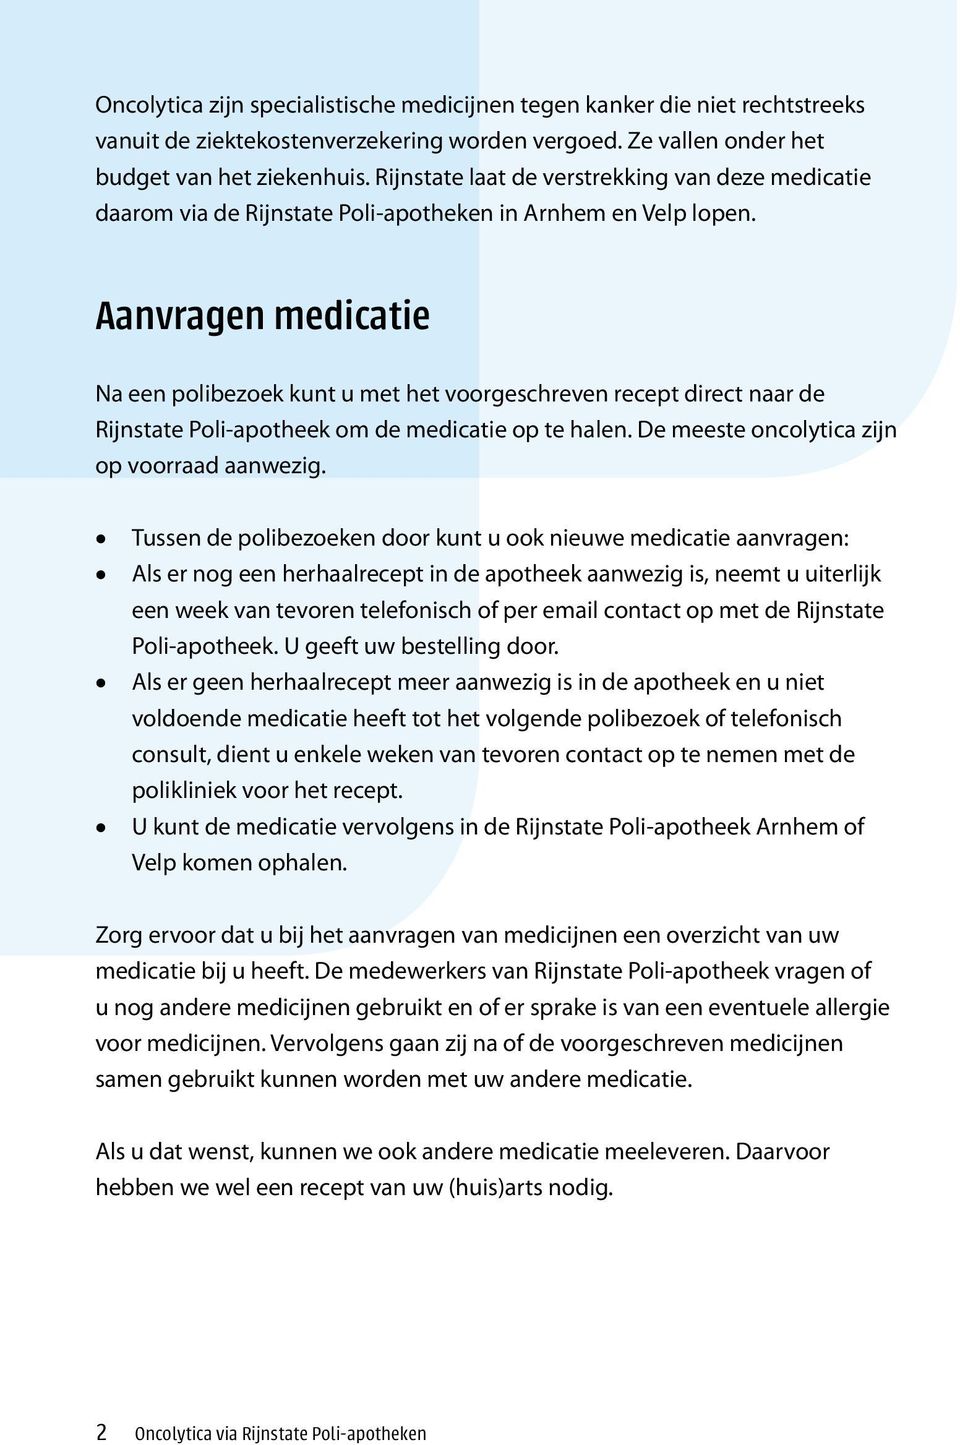 Aanvragen medicatie Na een polibezoek kunt u met het voorgeschreven recept direct naar de Rijnstate Poli-apotheek om de medicatie op te halen. De meeste oncolytica zijn op voorraad aanwezig.